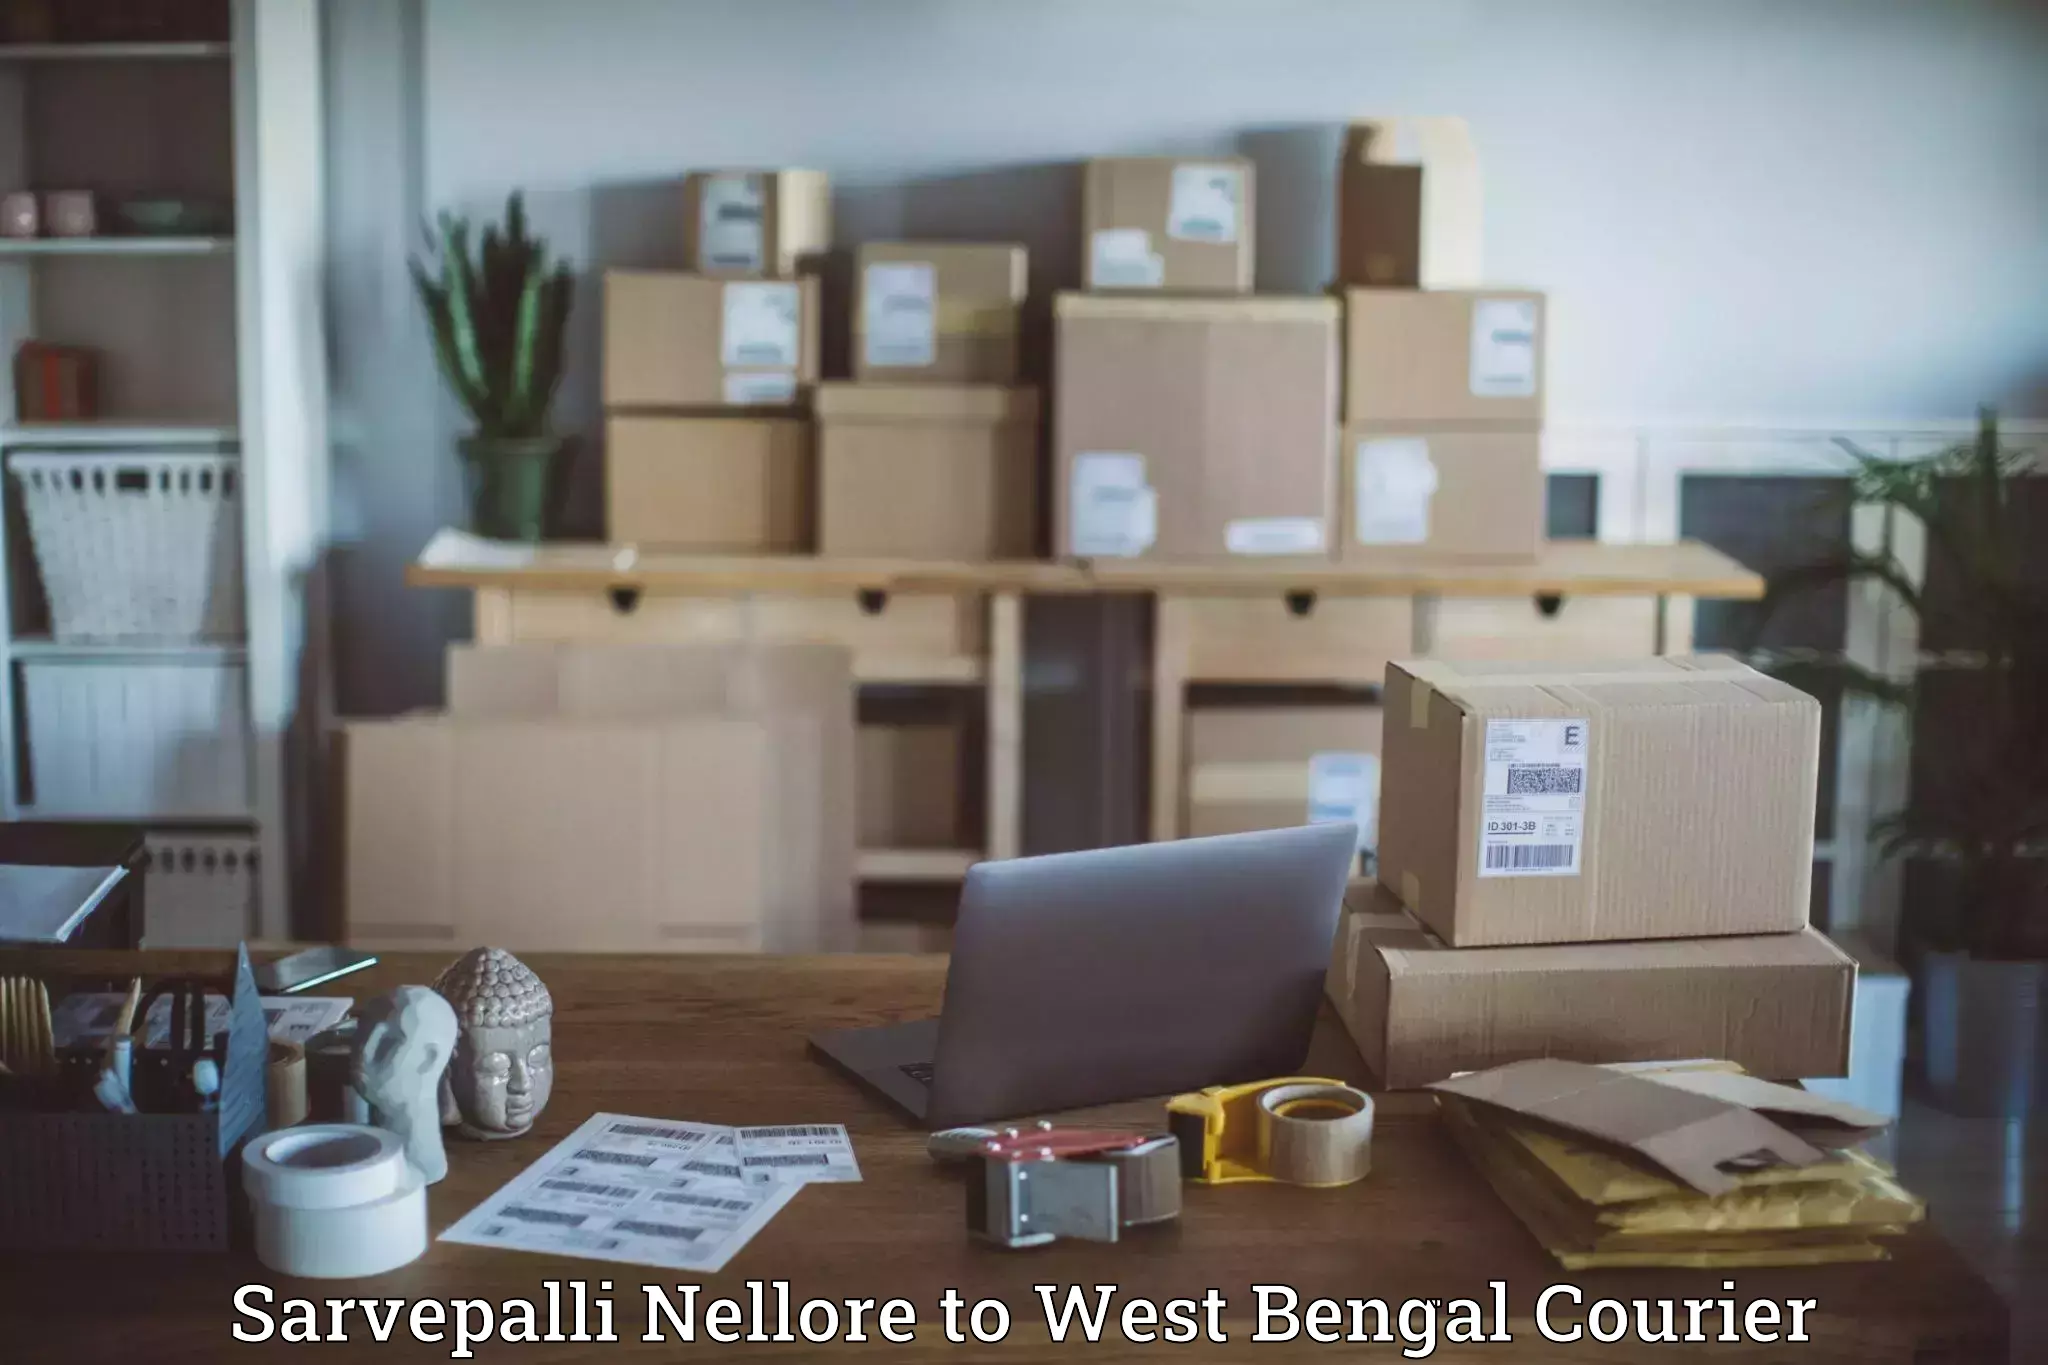 Cash on delivery service Sarvepalli Nellore to Medinipur